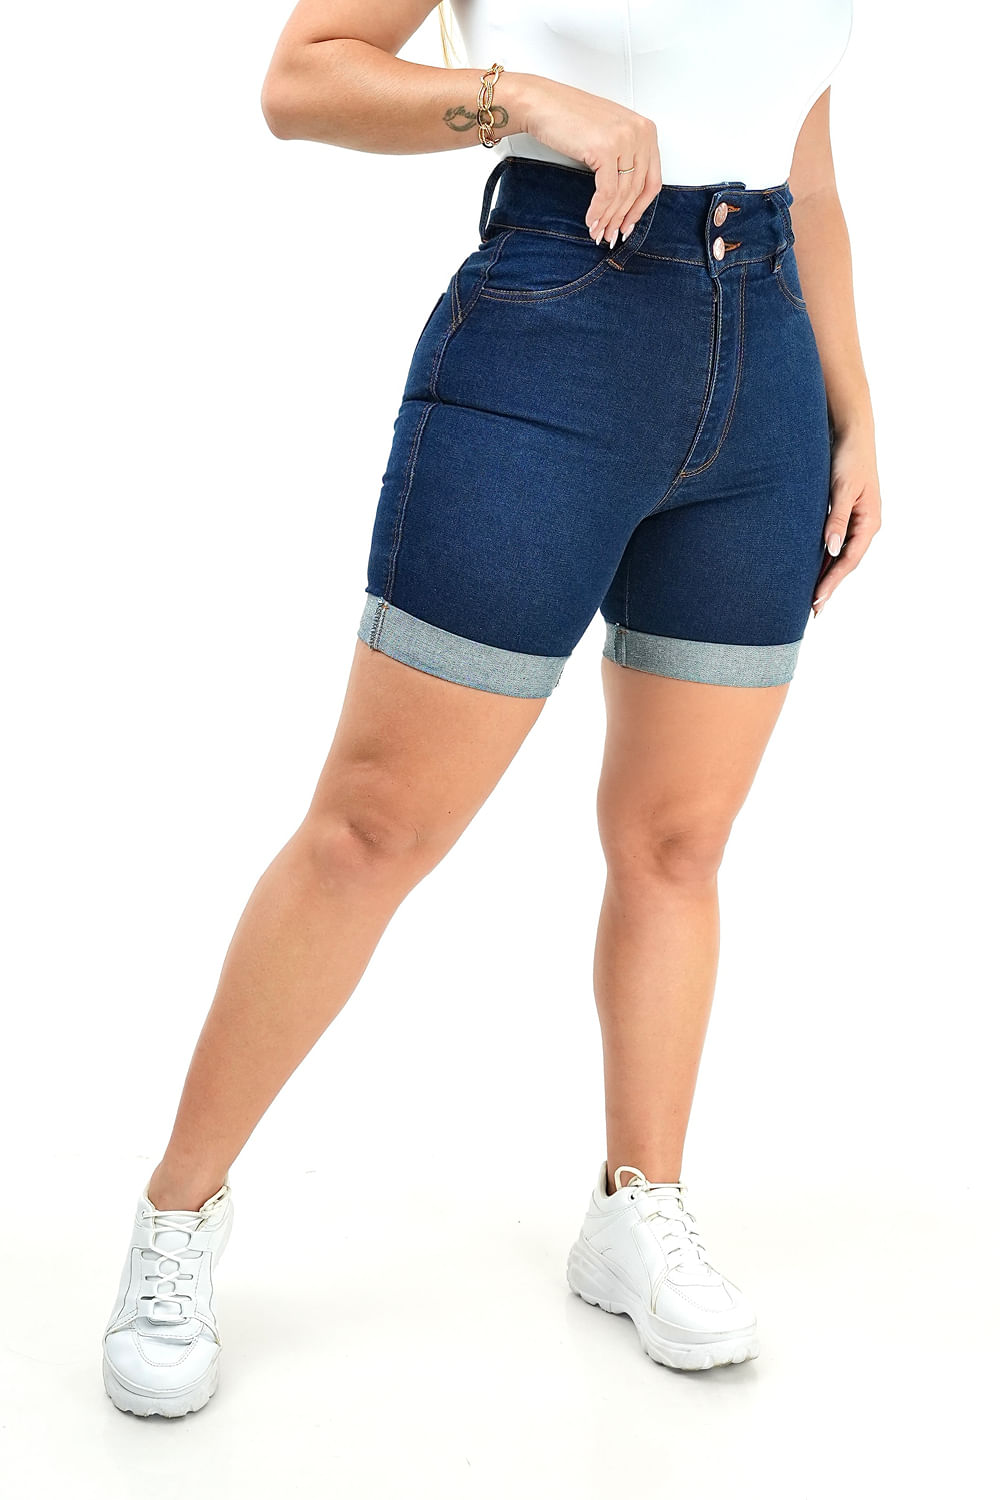 Preços baixos em Shorts Jeans Tamanho 18 para mulheres